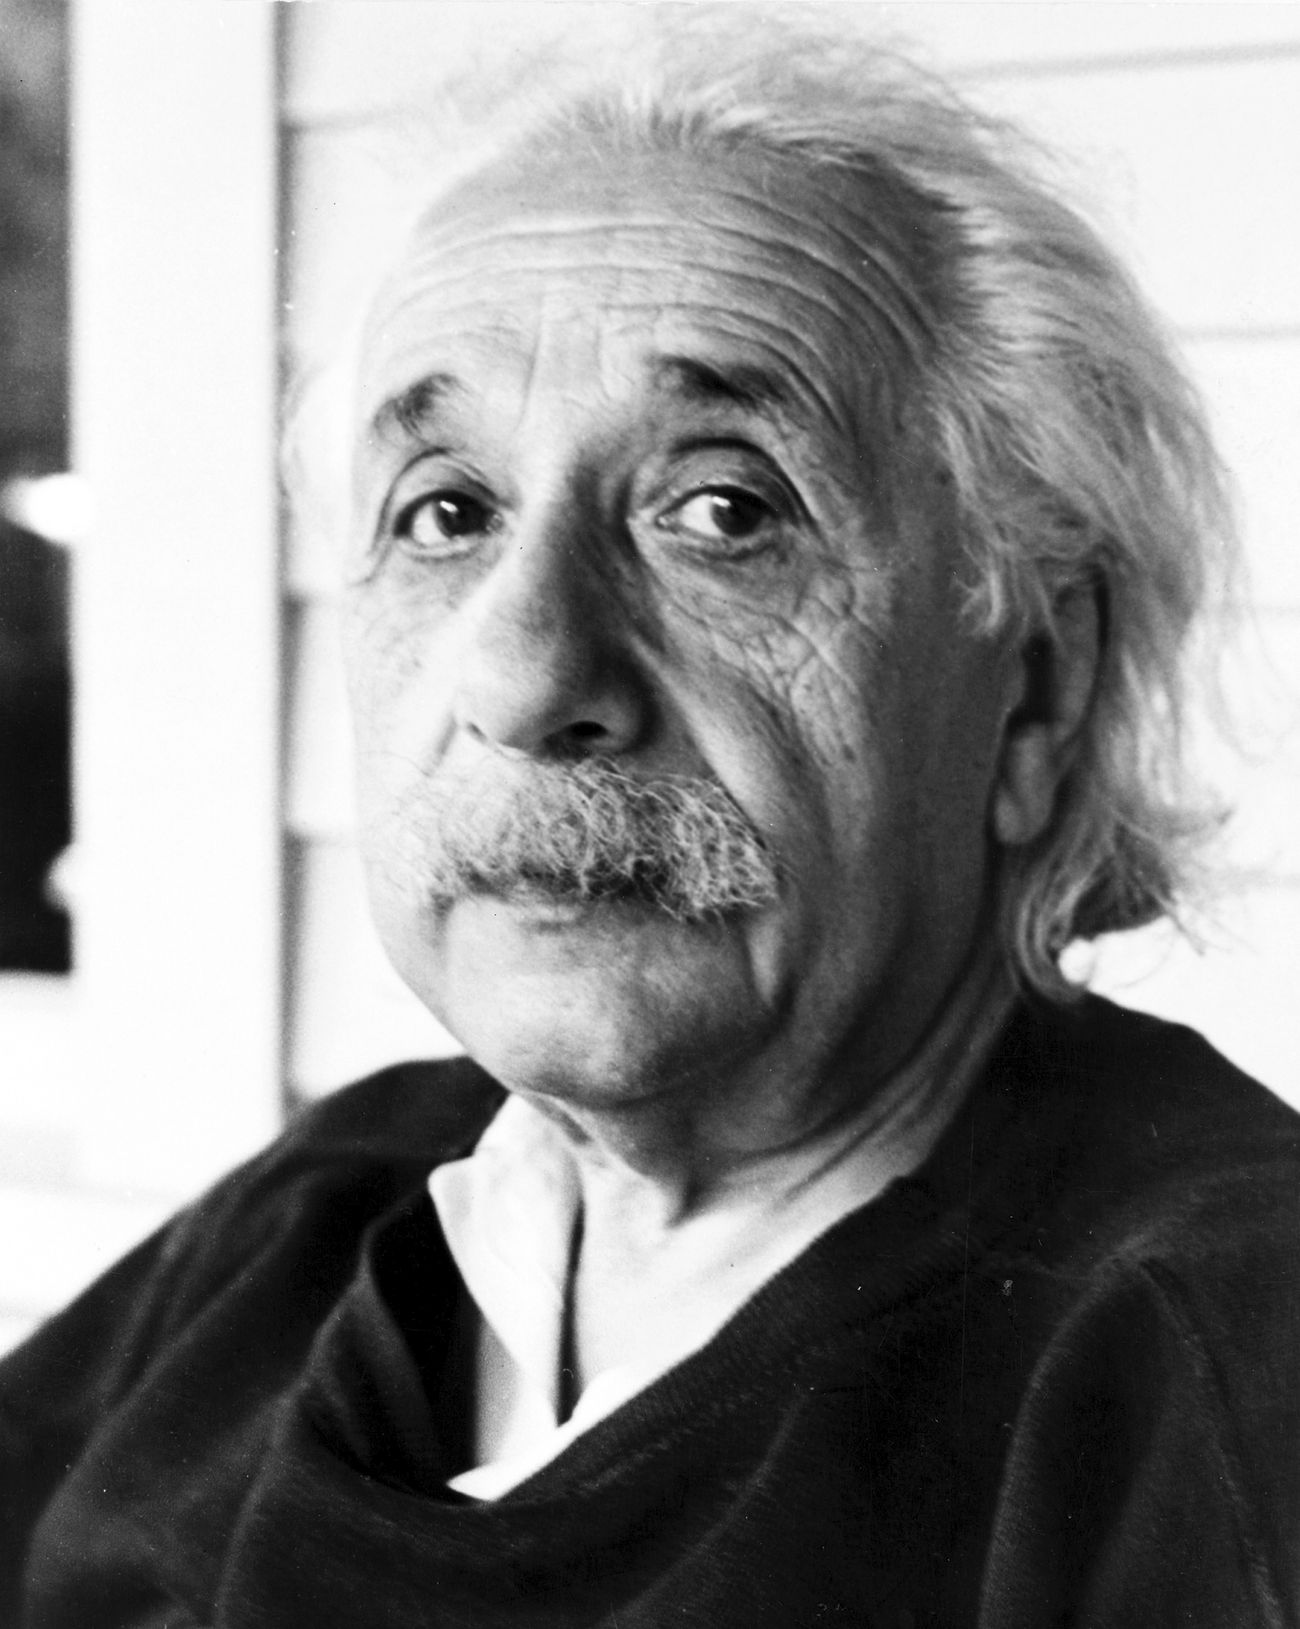 Albert Einstein portrait, famous physicist